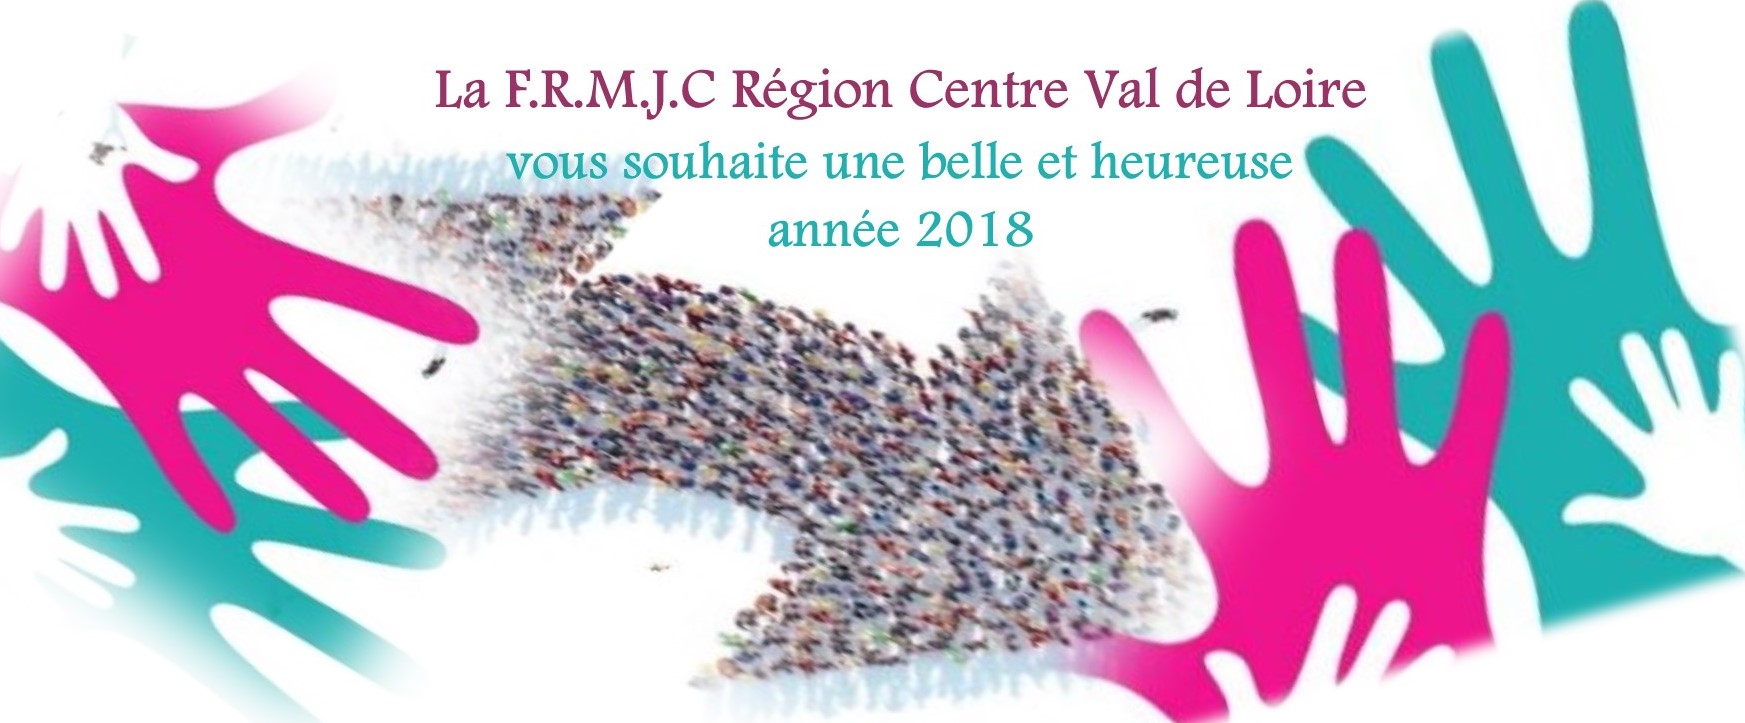 La FRMJC vous souhaite une bonne année 2018